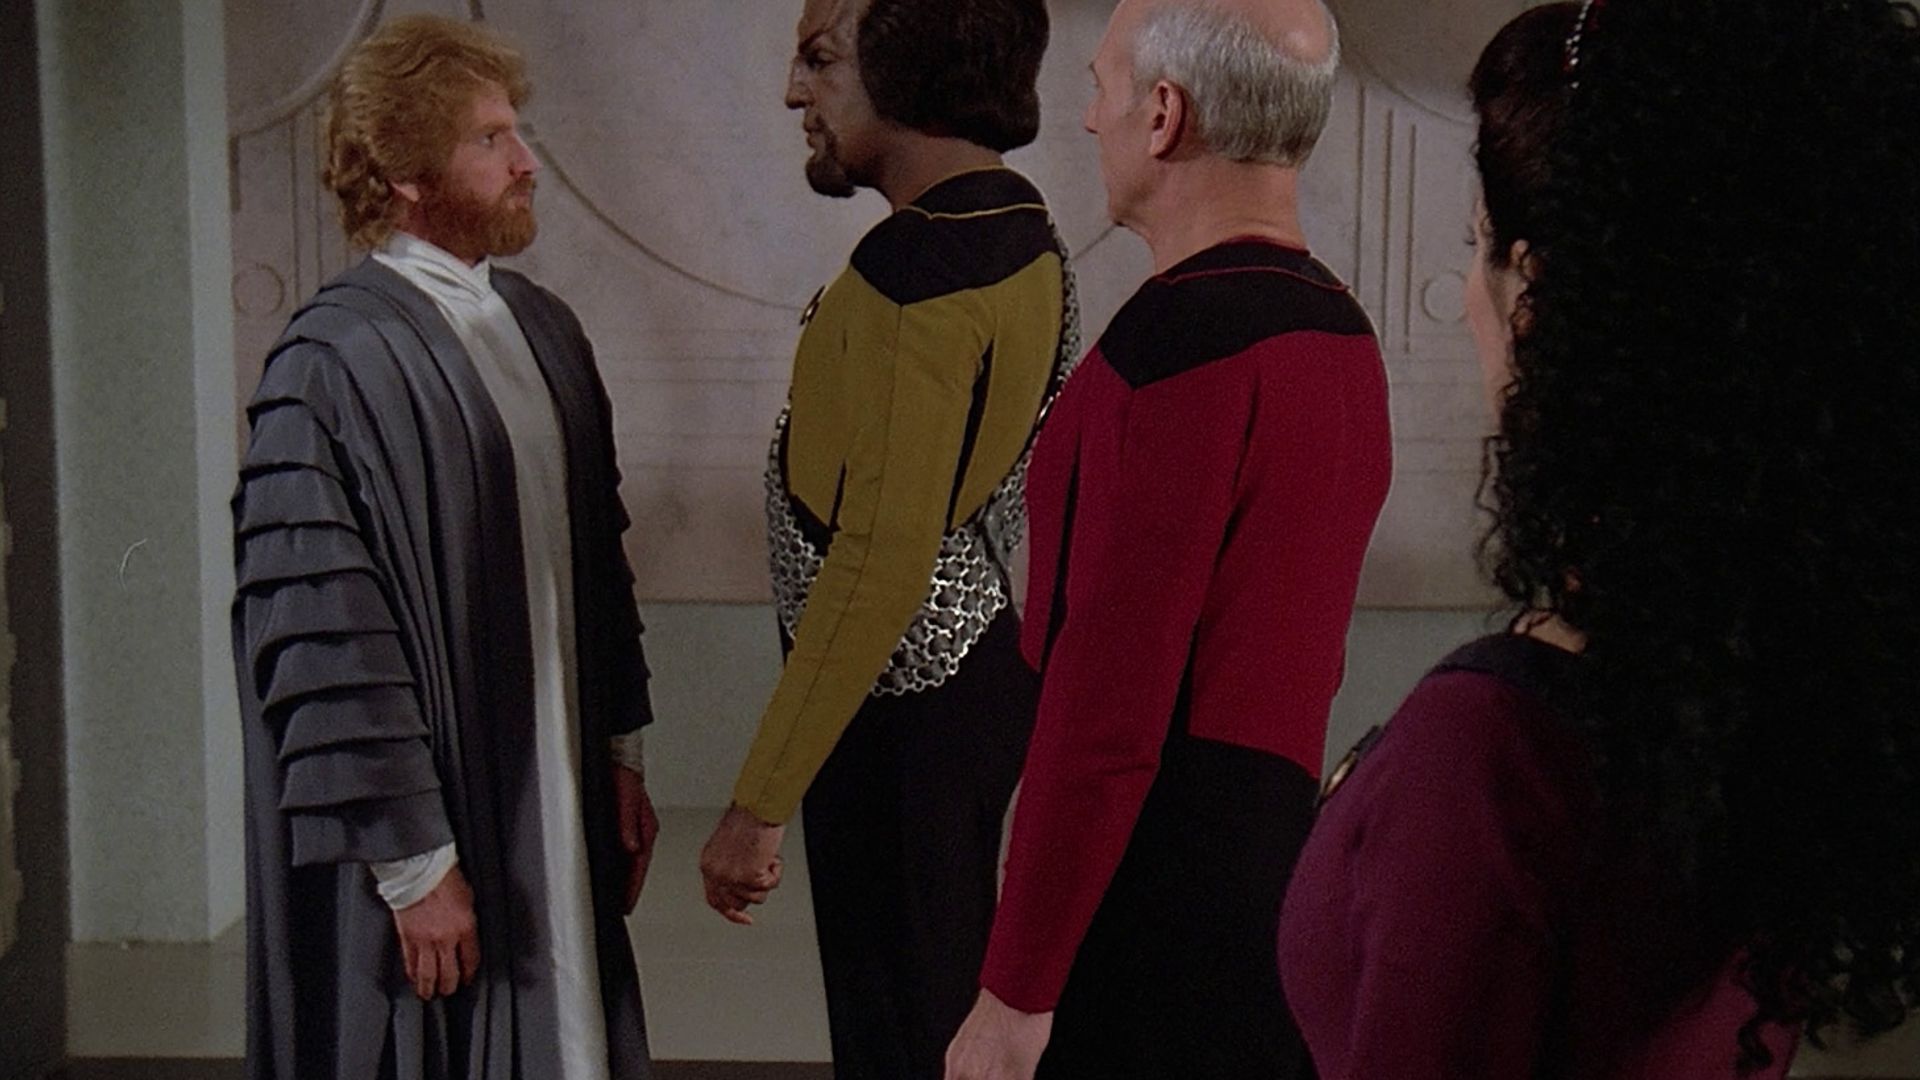 Star Trek: The Next Generation background